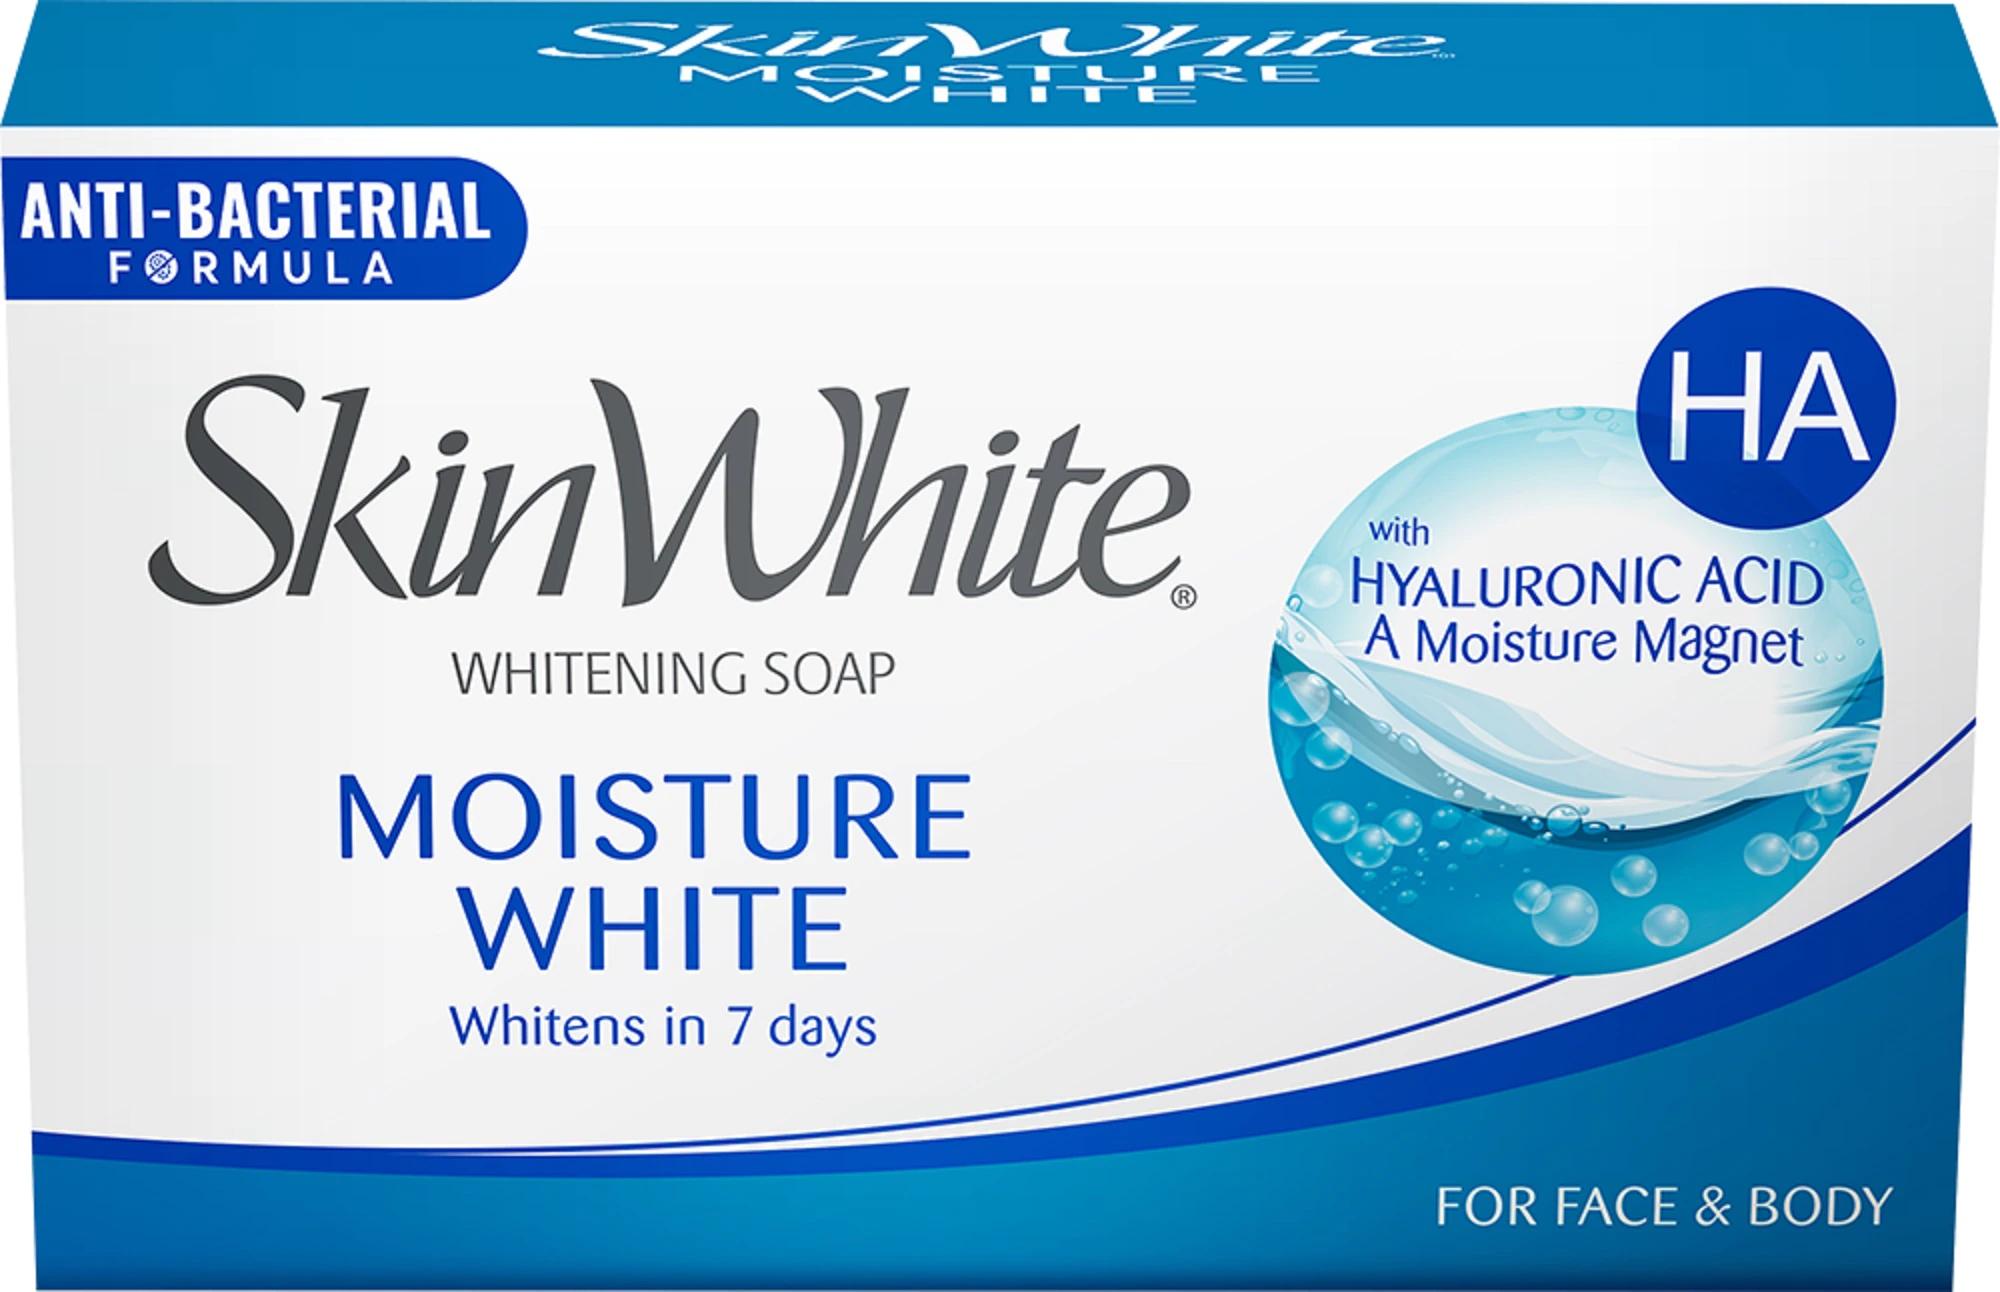 12 skinwhite moisturewhite